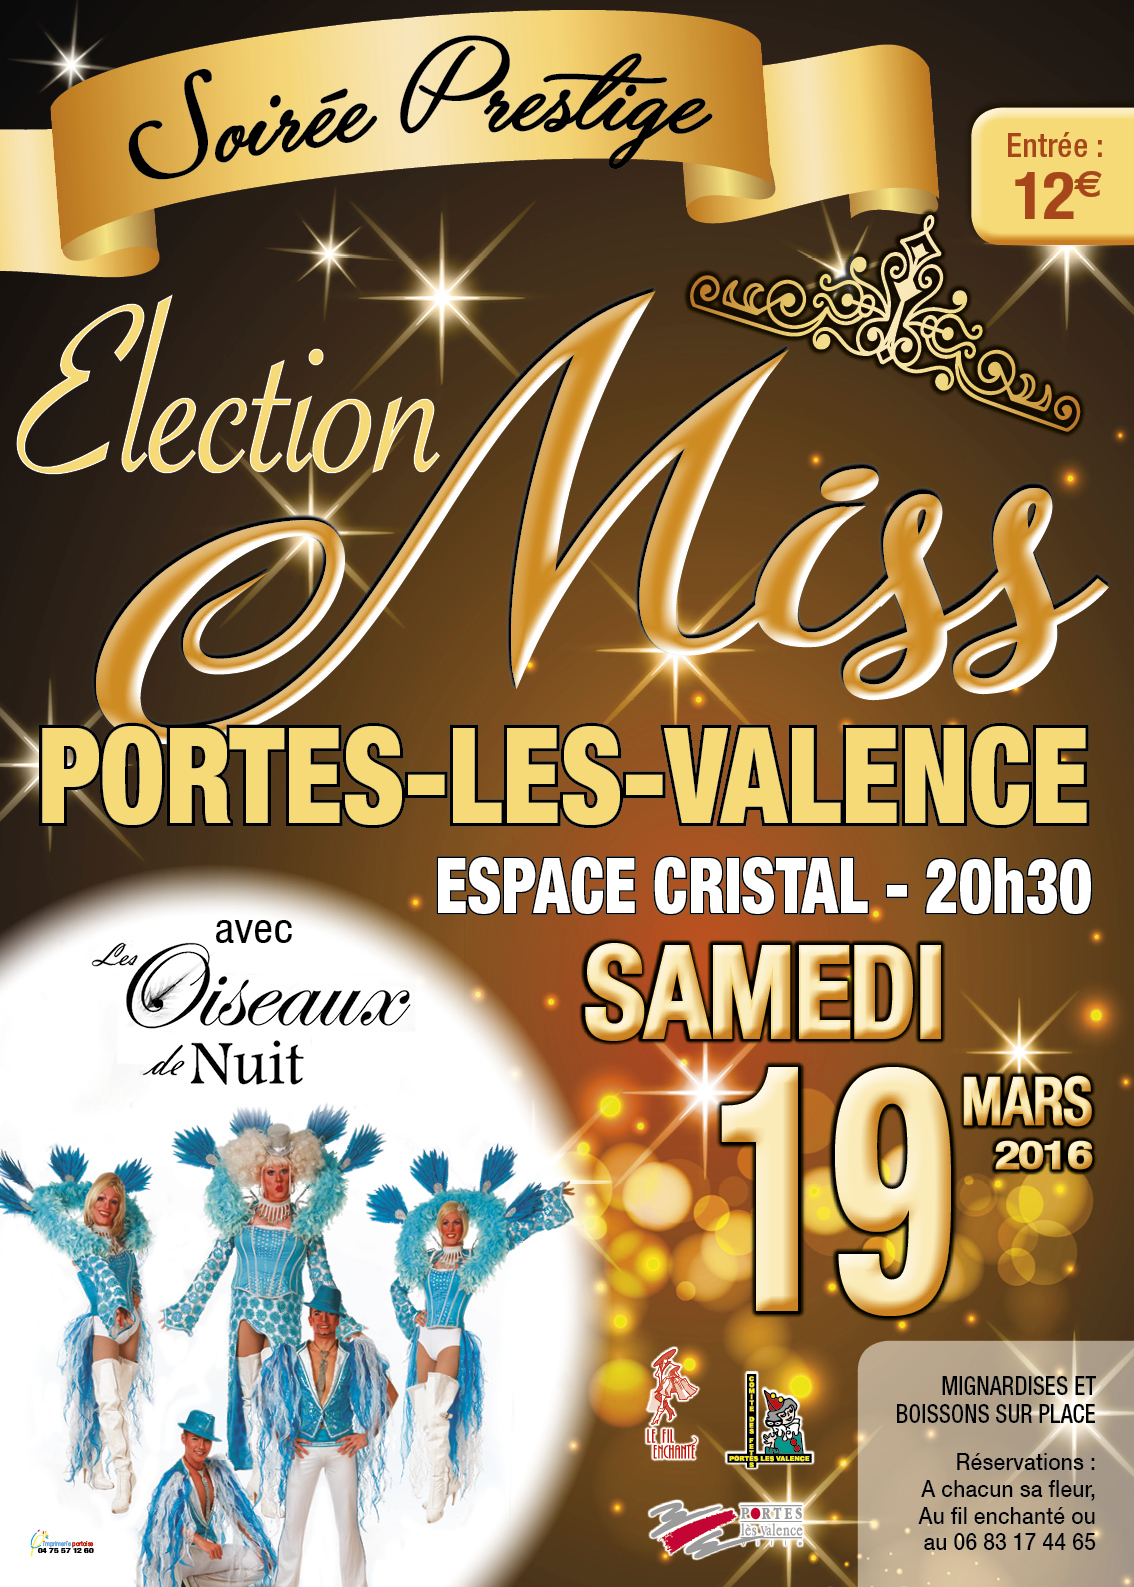 Affiche miss Portes-lès-Valence